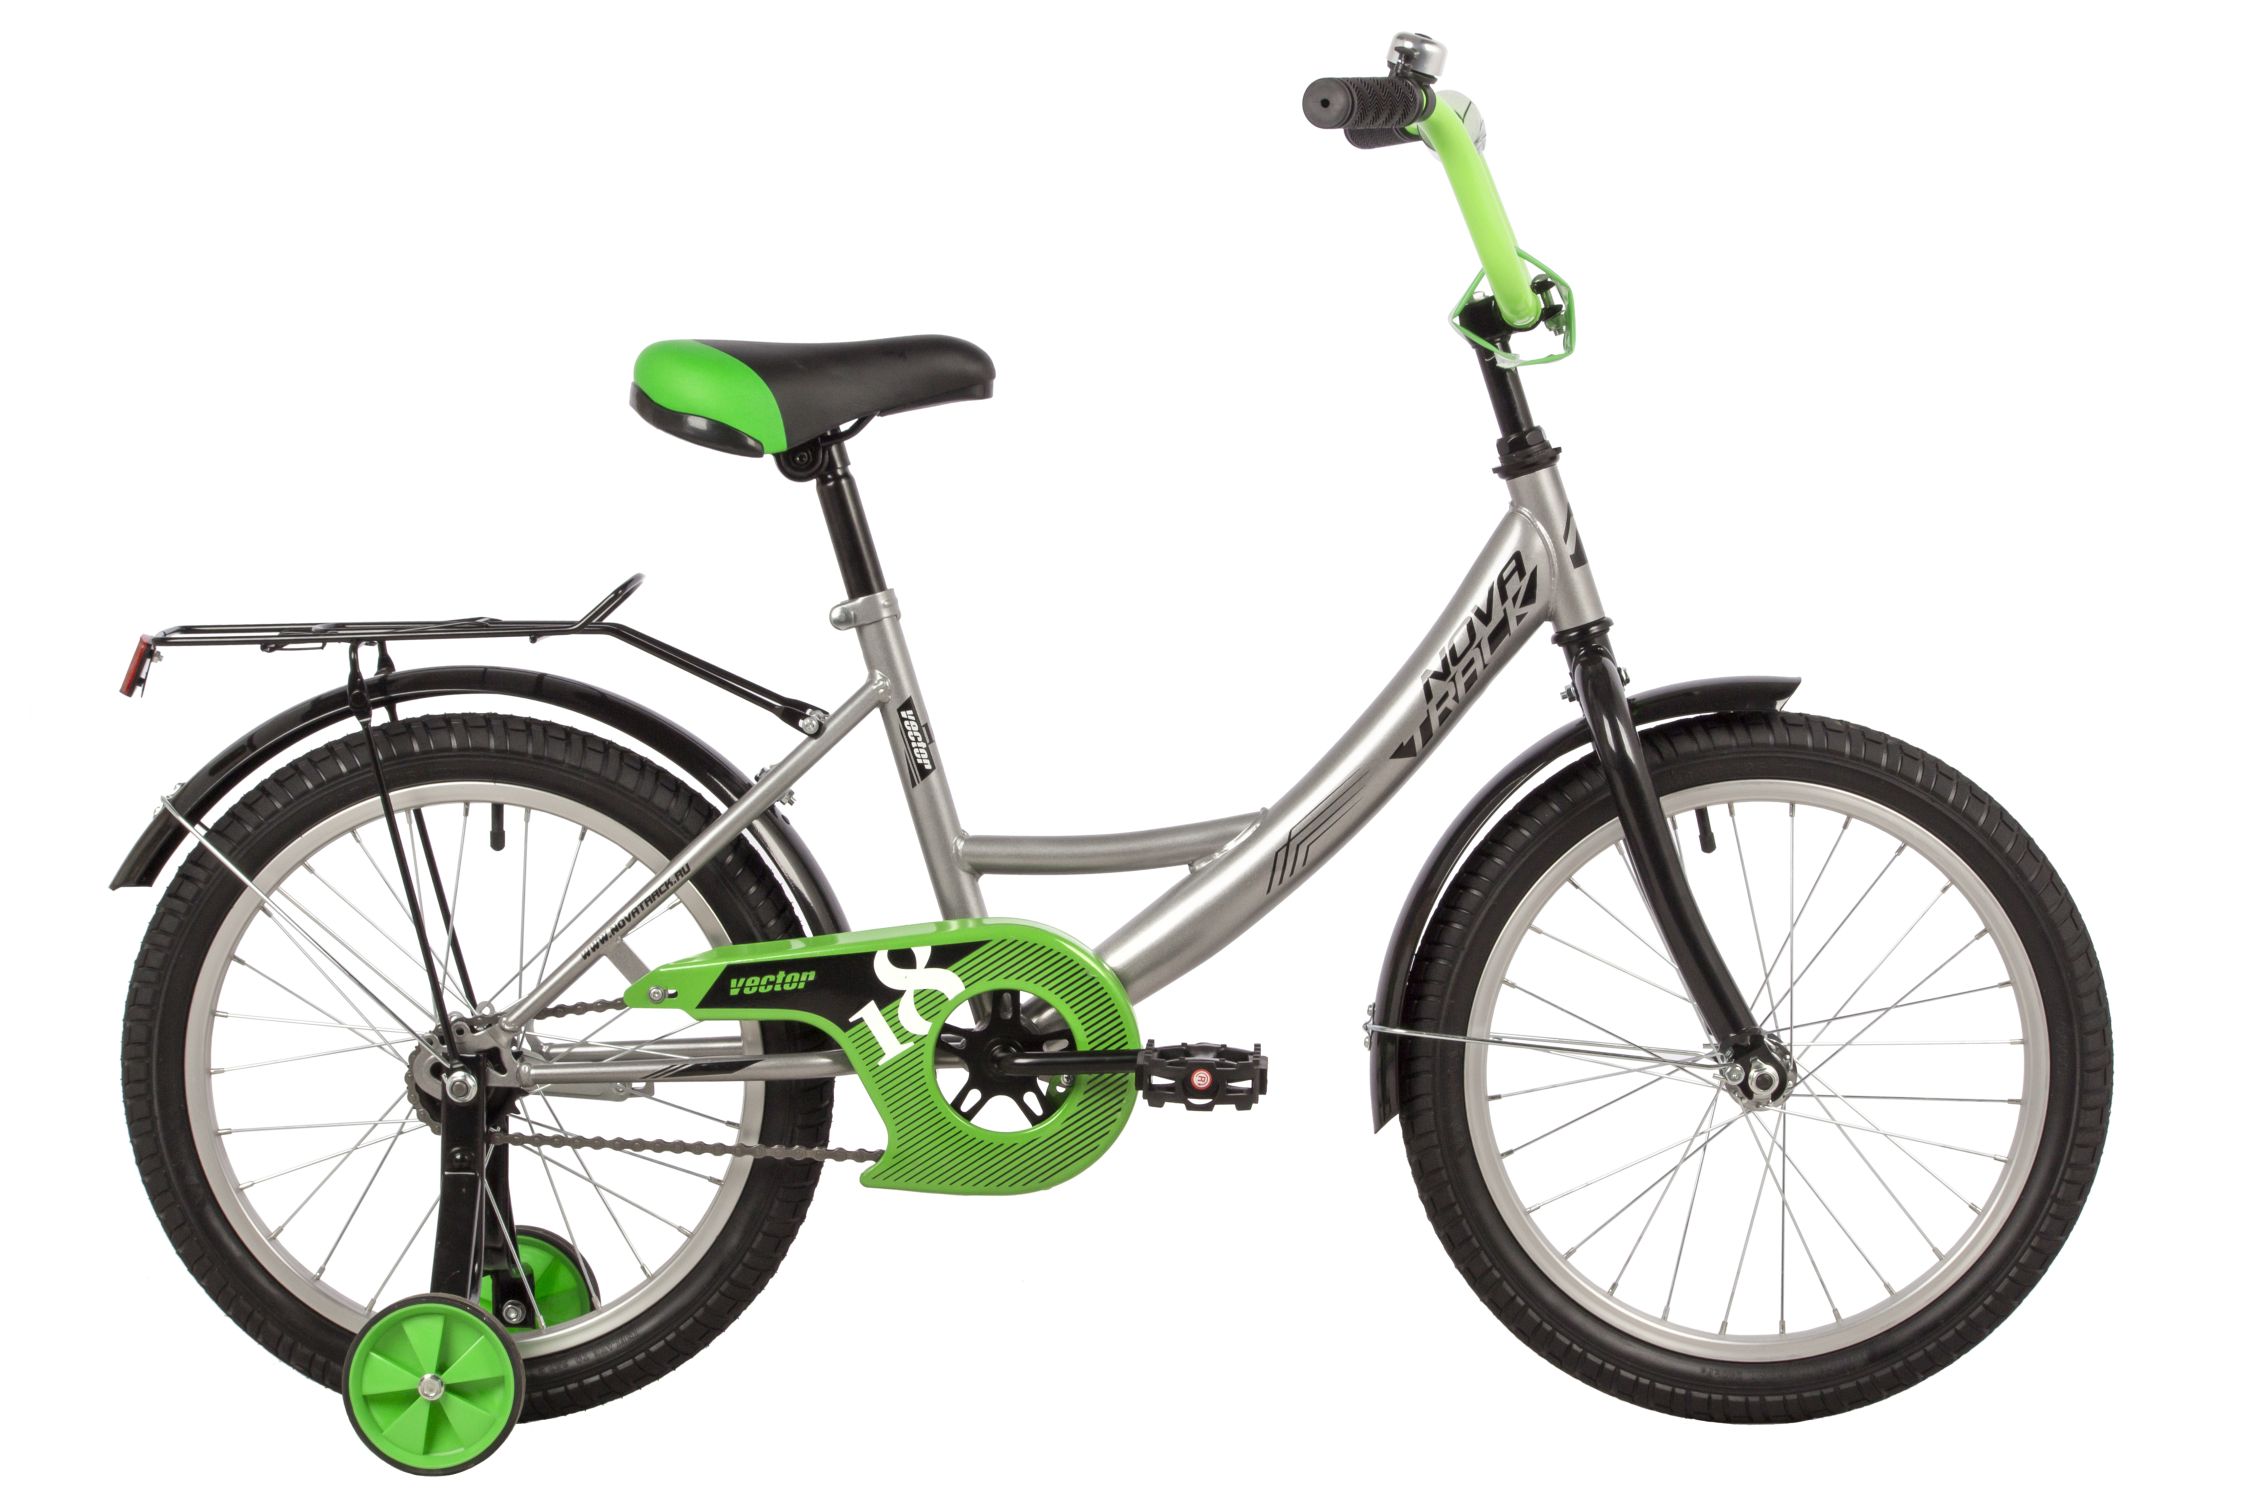  Отзывы о Детском велосипеде Novatrack Vector 18 2022